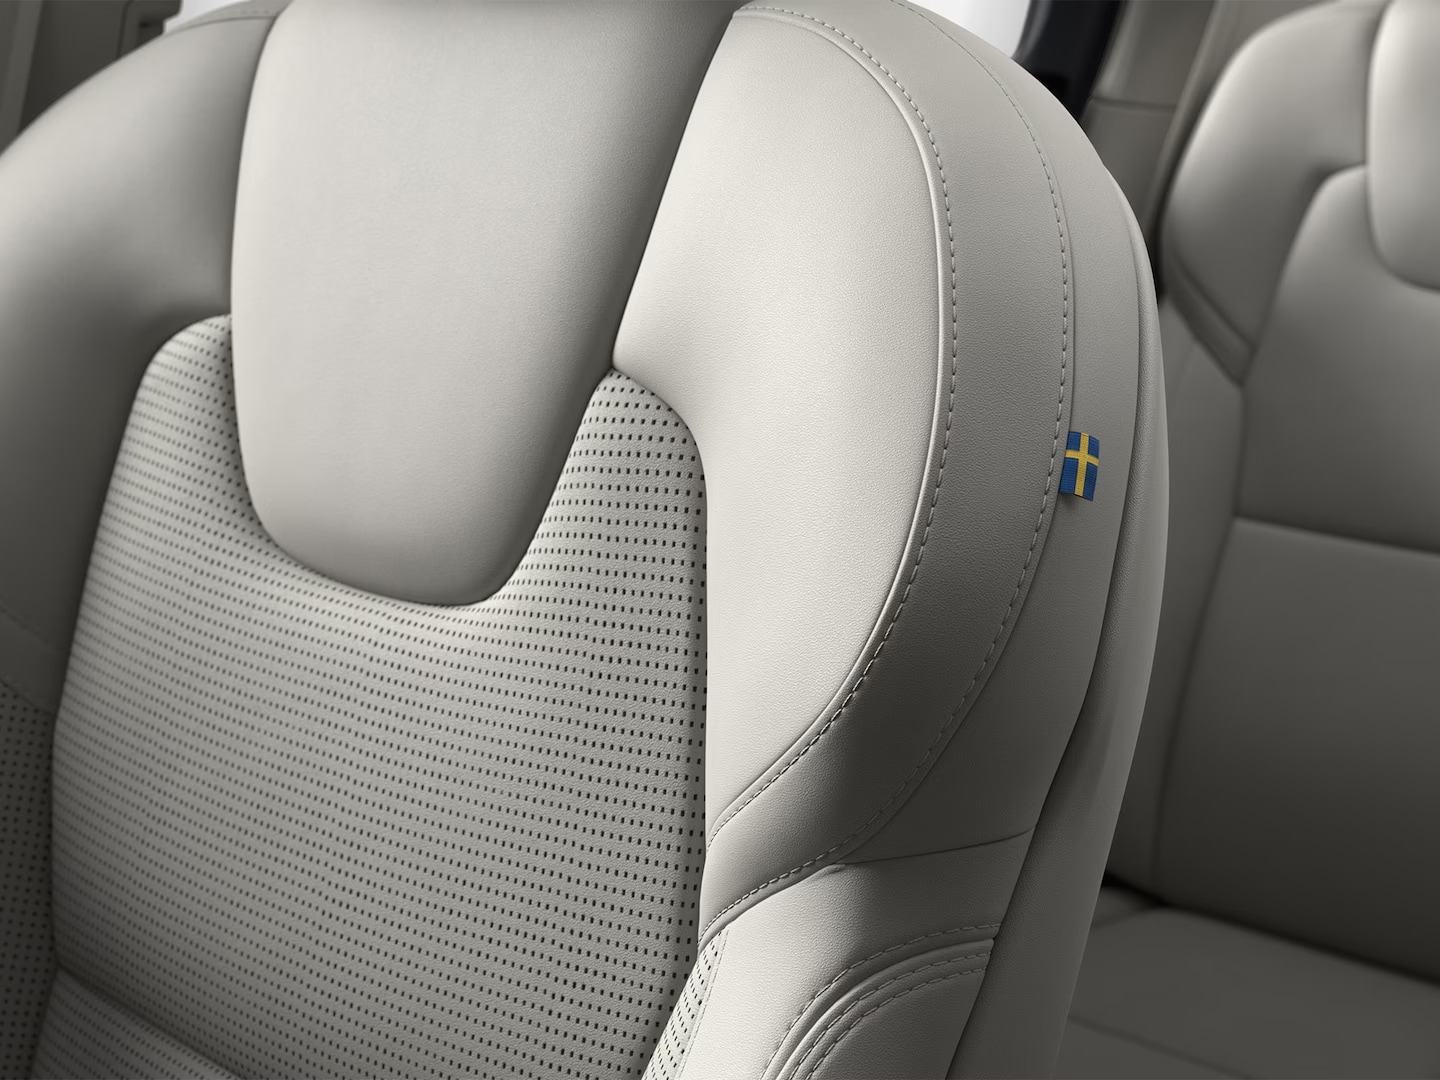 Szerokokątny widok na siedem foteli obitych miękką skórą Nappa w kabinie SUV-a Volvo XC90 w wersji miękkiej hybrydy